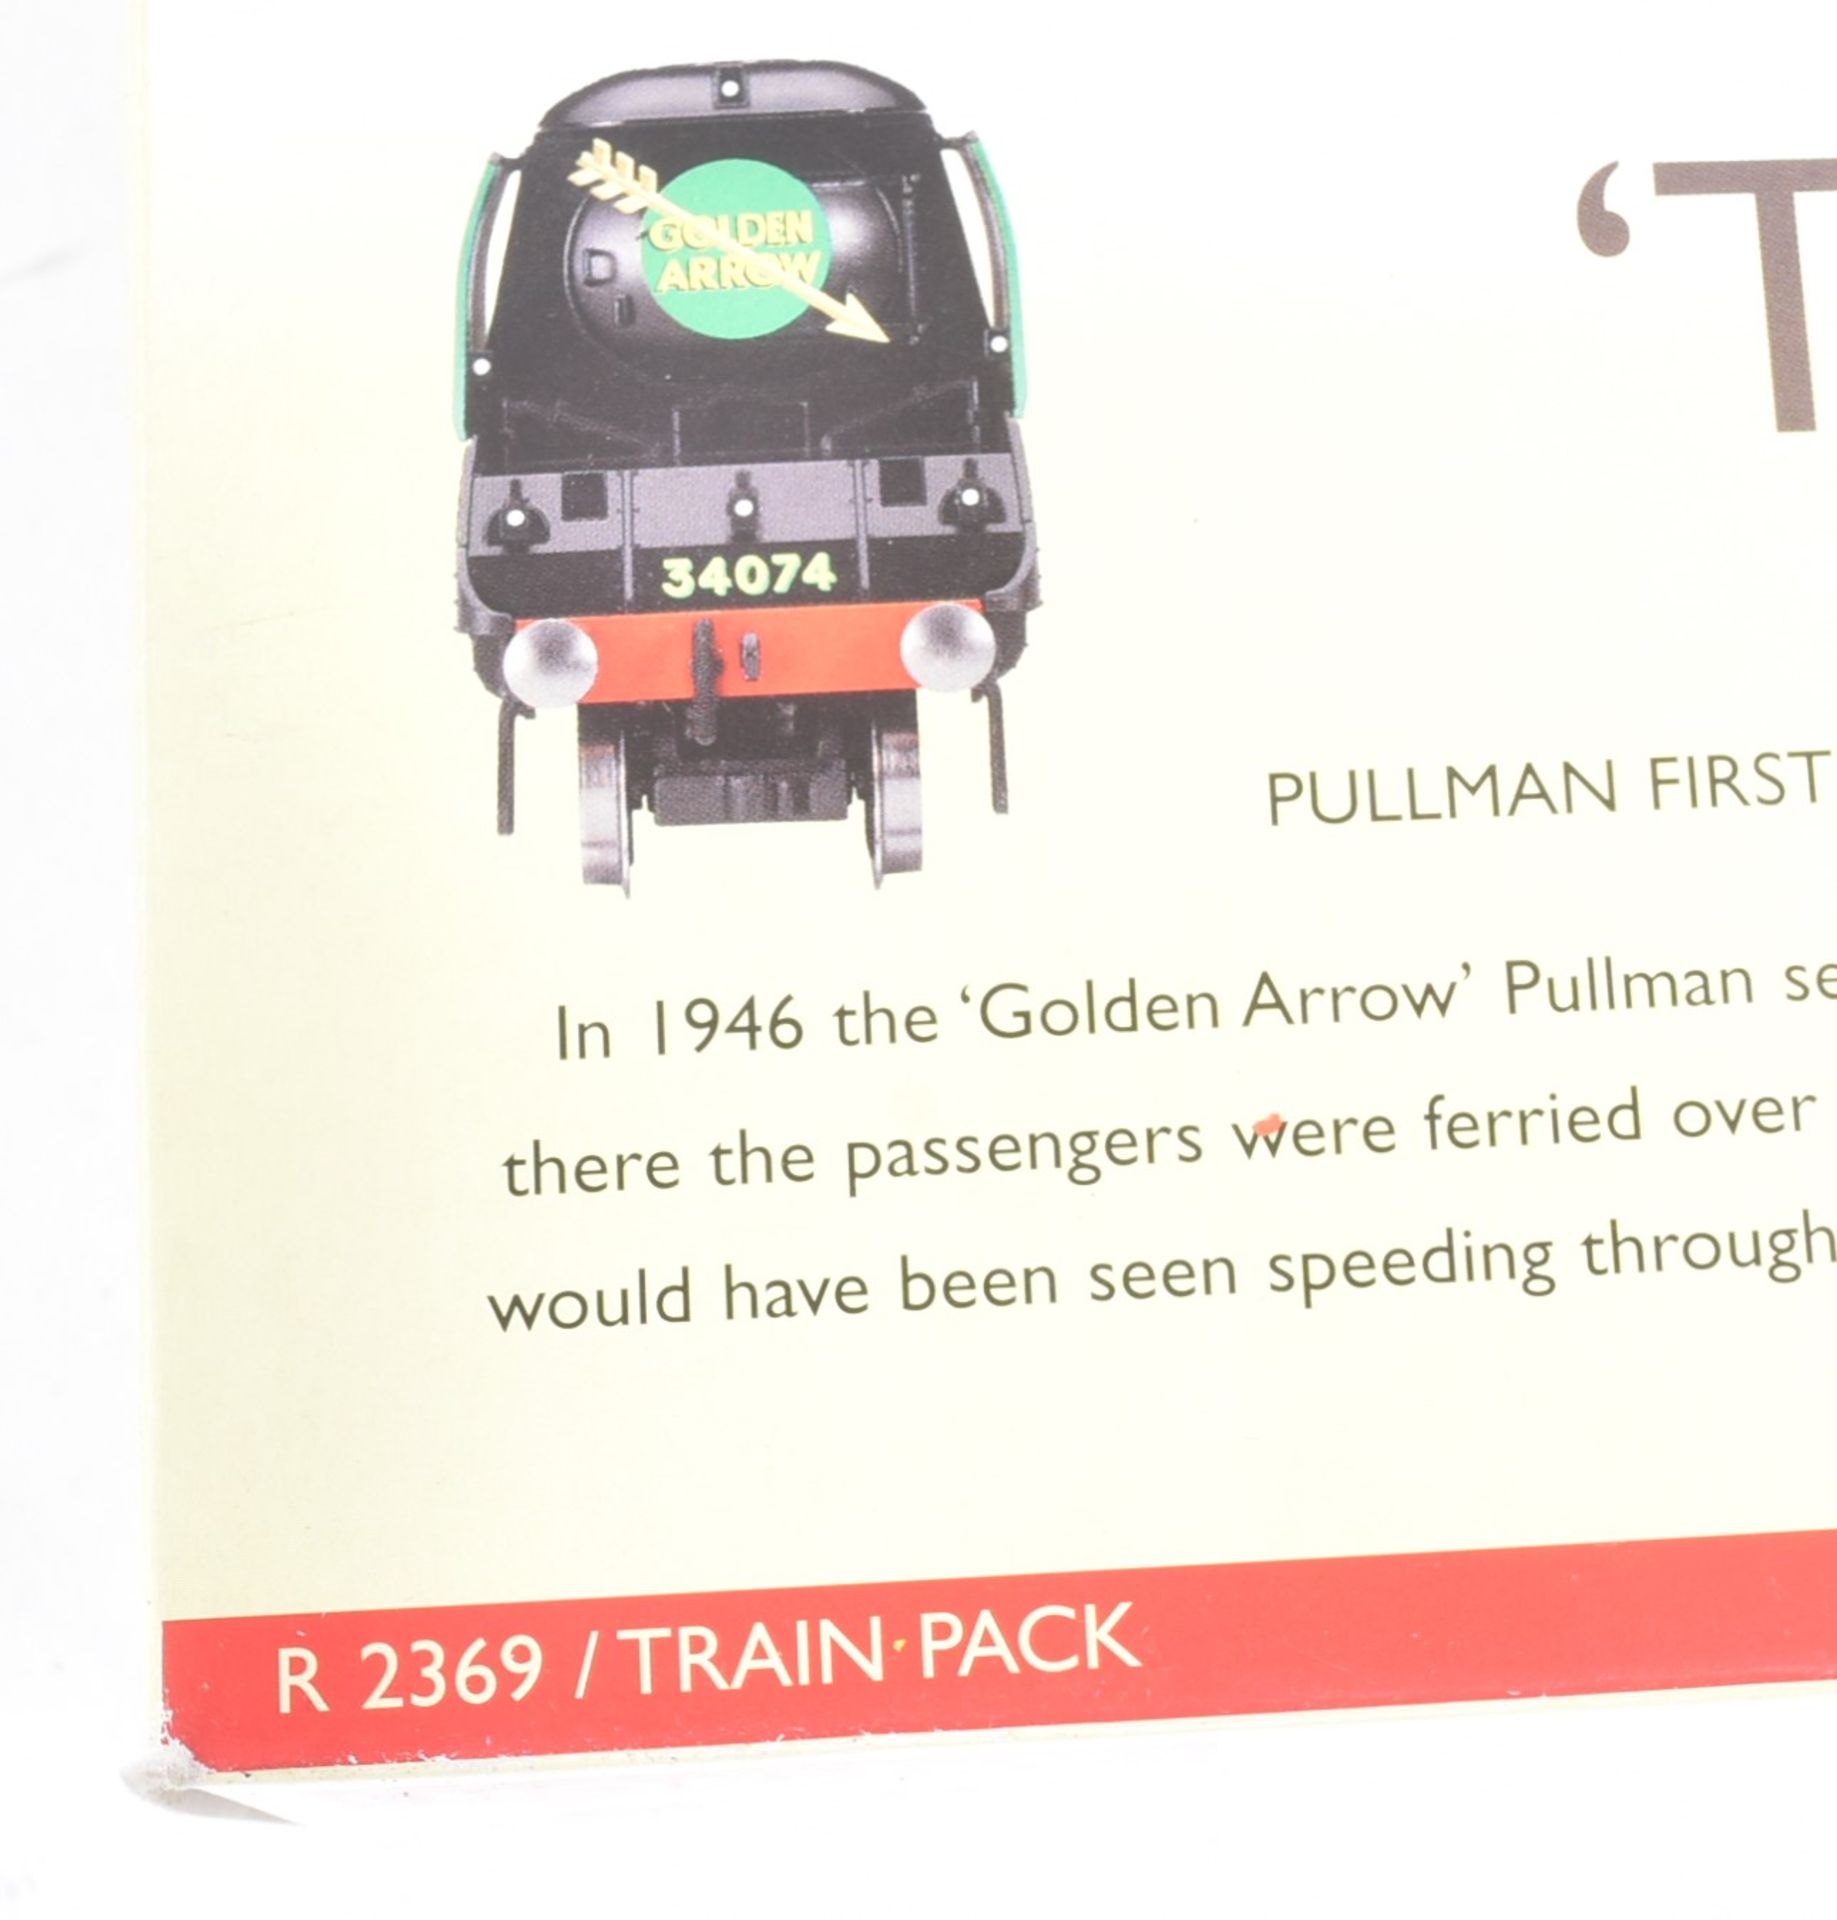 MODEL RAILWAY - HORNBY OO GAUGE GOLDEN ARROW LOCOMOTIVE TRAIN SET - Image 4 of 5